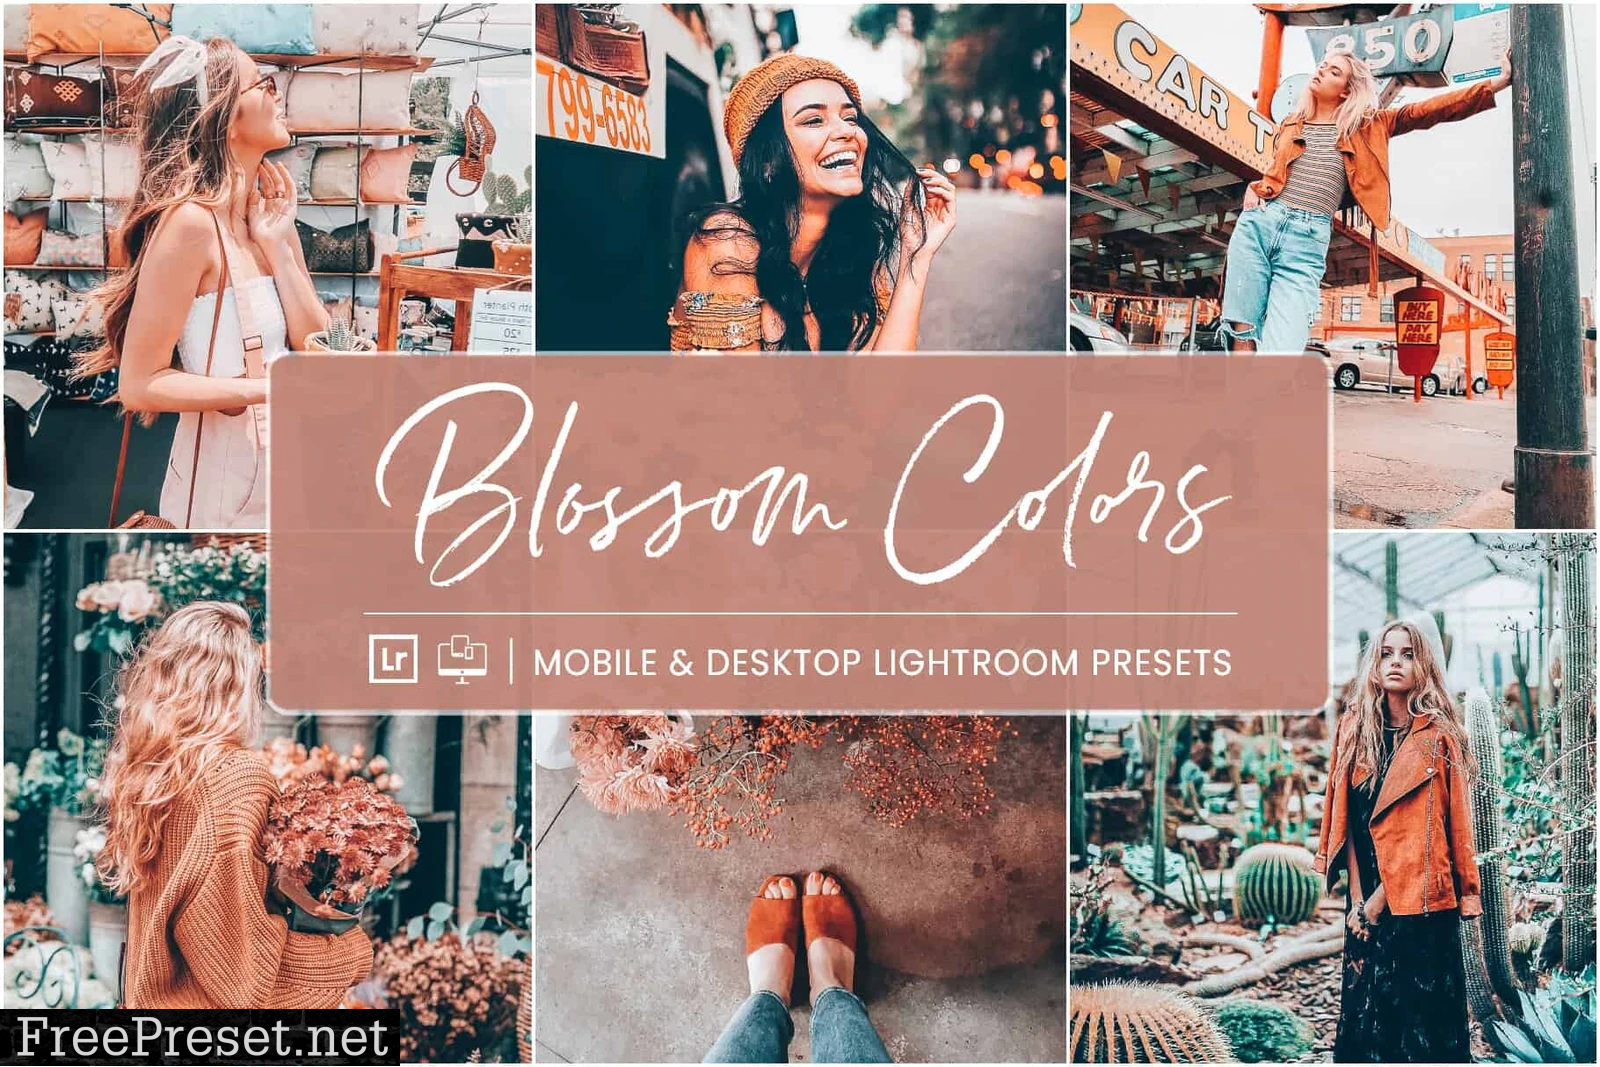 NesPresets - Blossom Colors